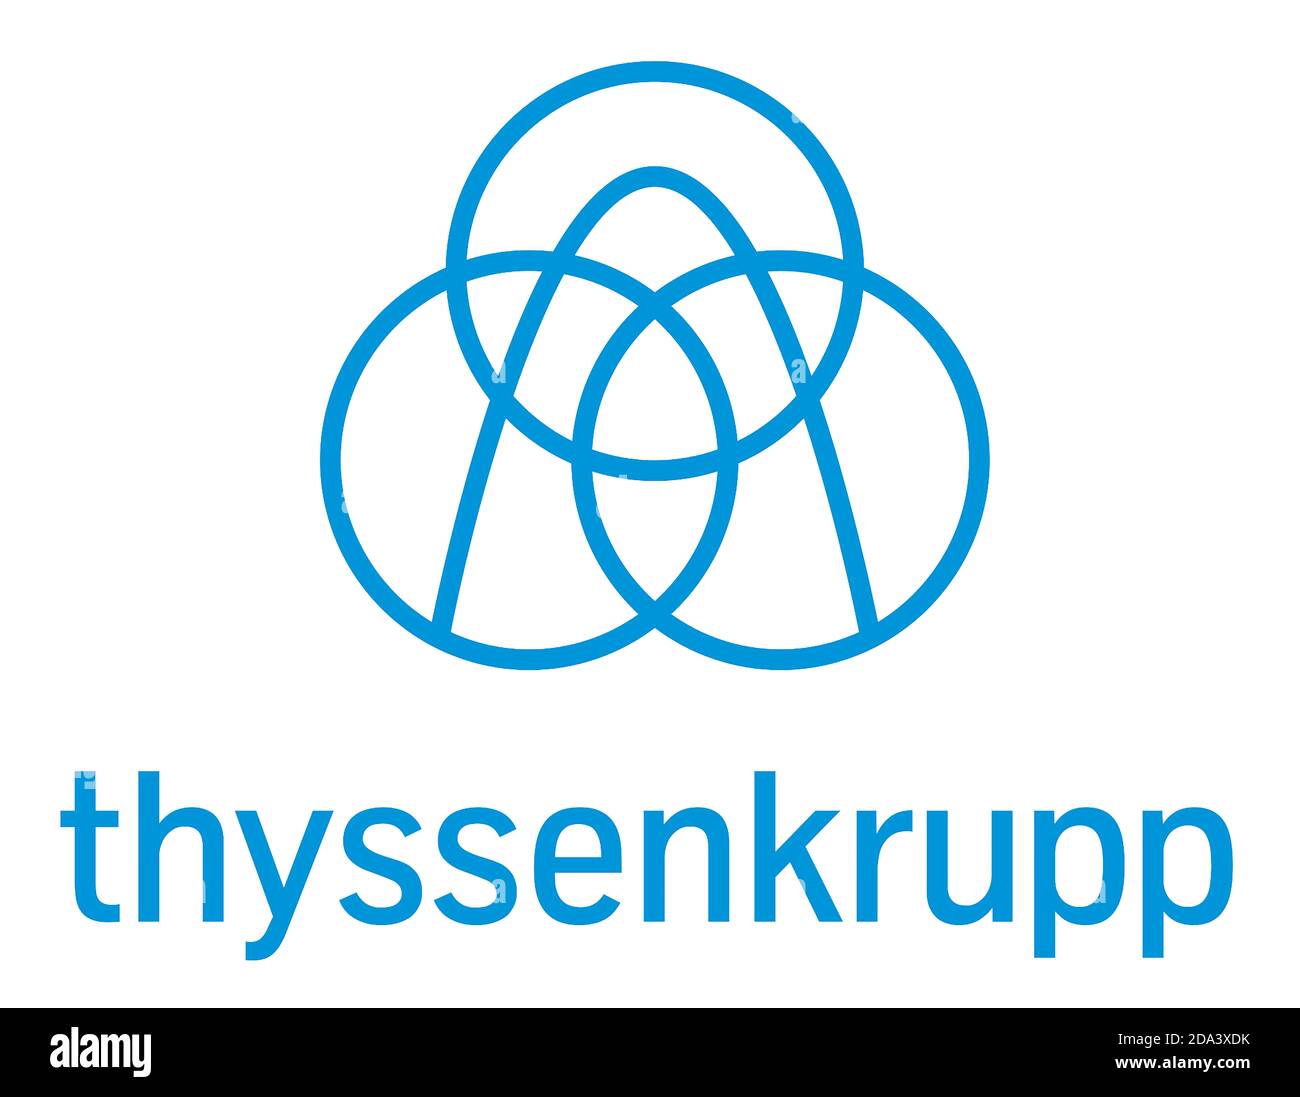 Logo de la société sidérurgique multinationale allemande ThyssenKrupp basée à Duisburg et Essen - Allemagne. Banque D'Images